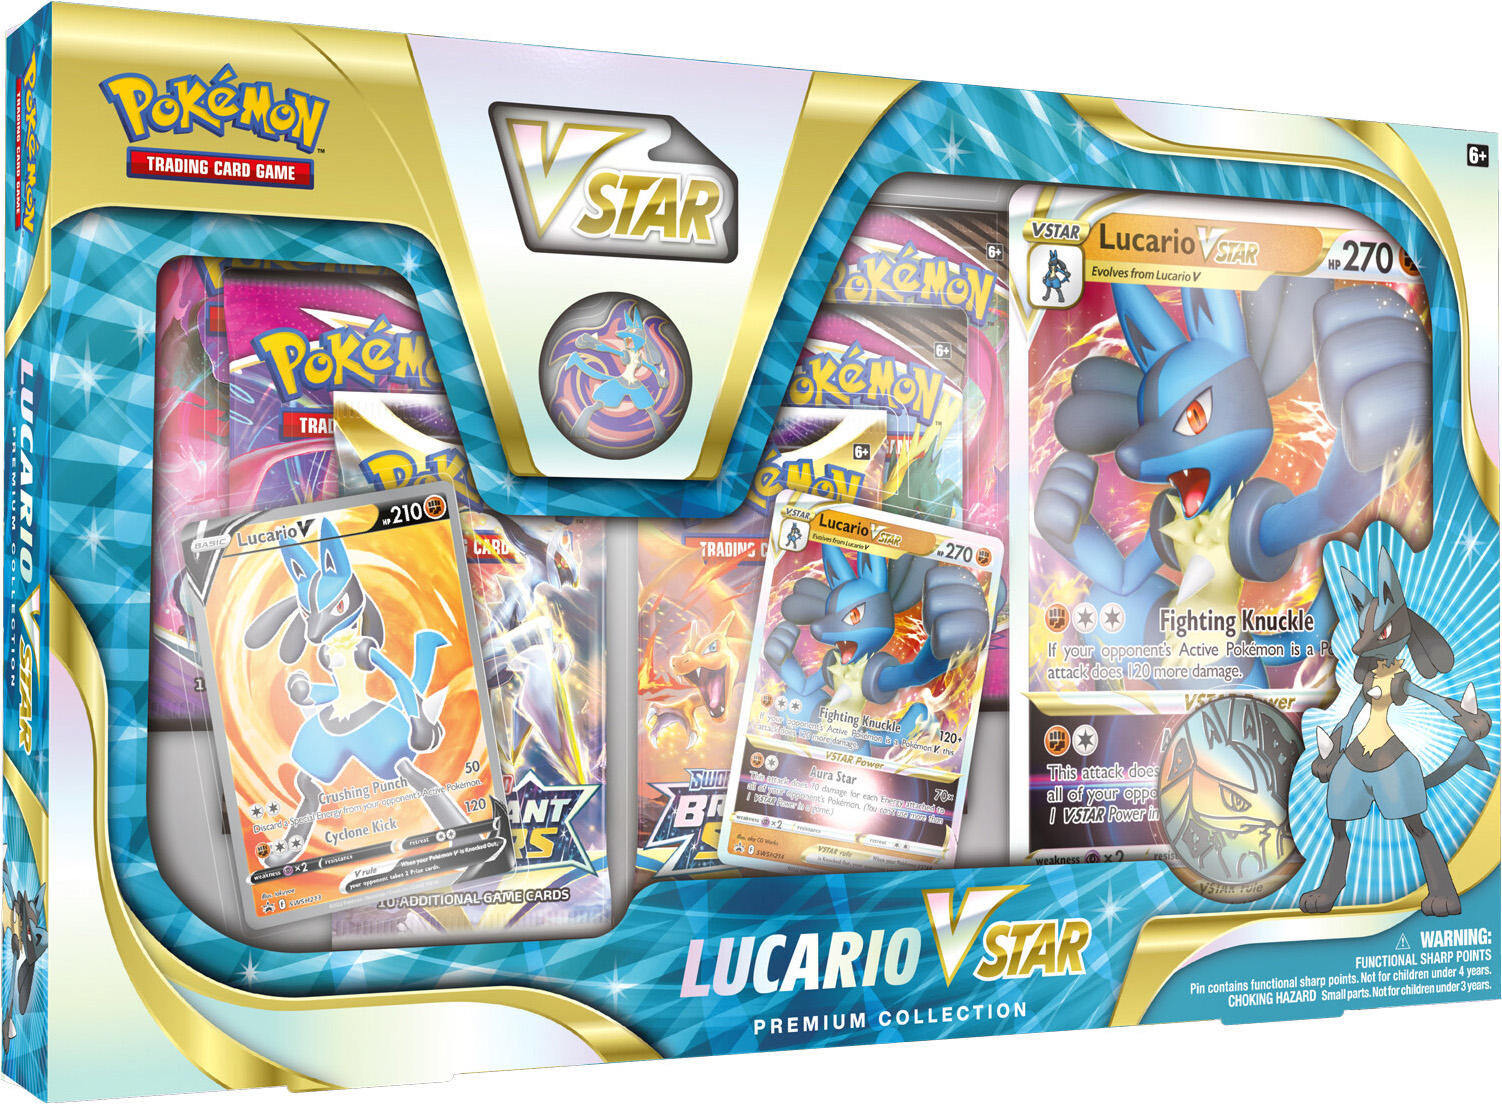 Pokémon Lucario VSTAR Premium Collection Box (North American)